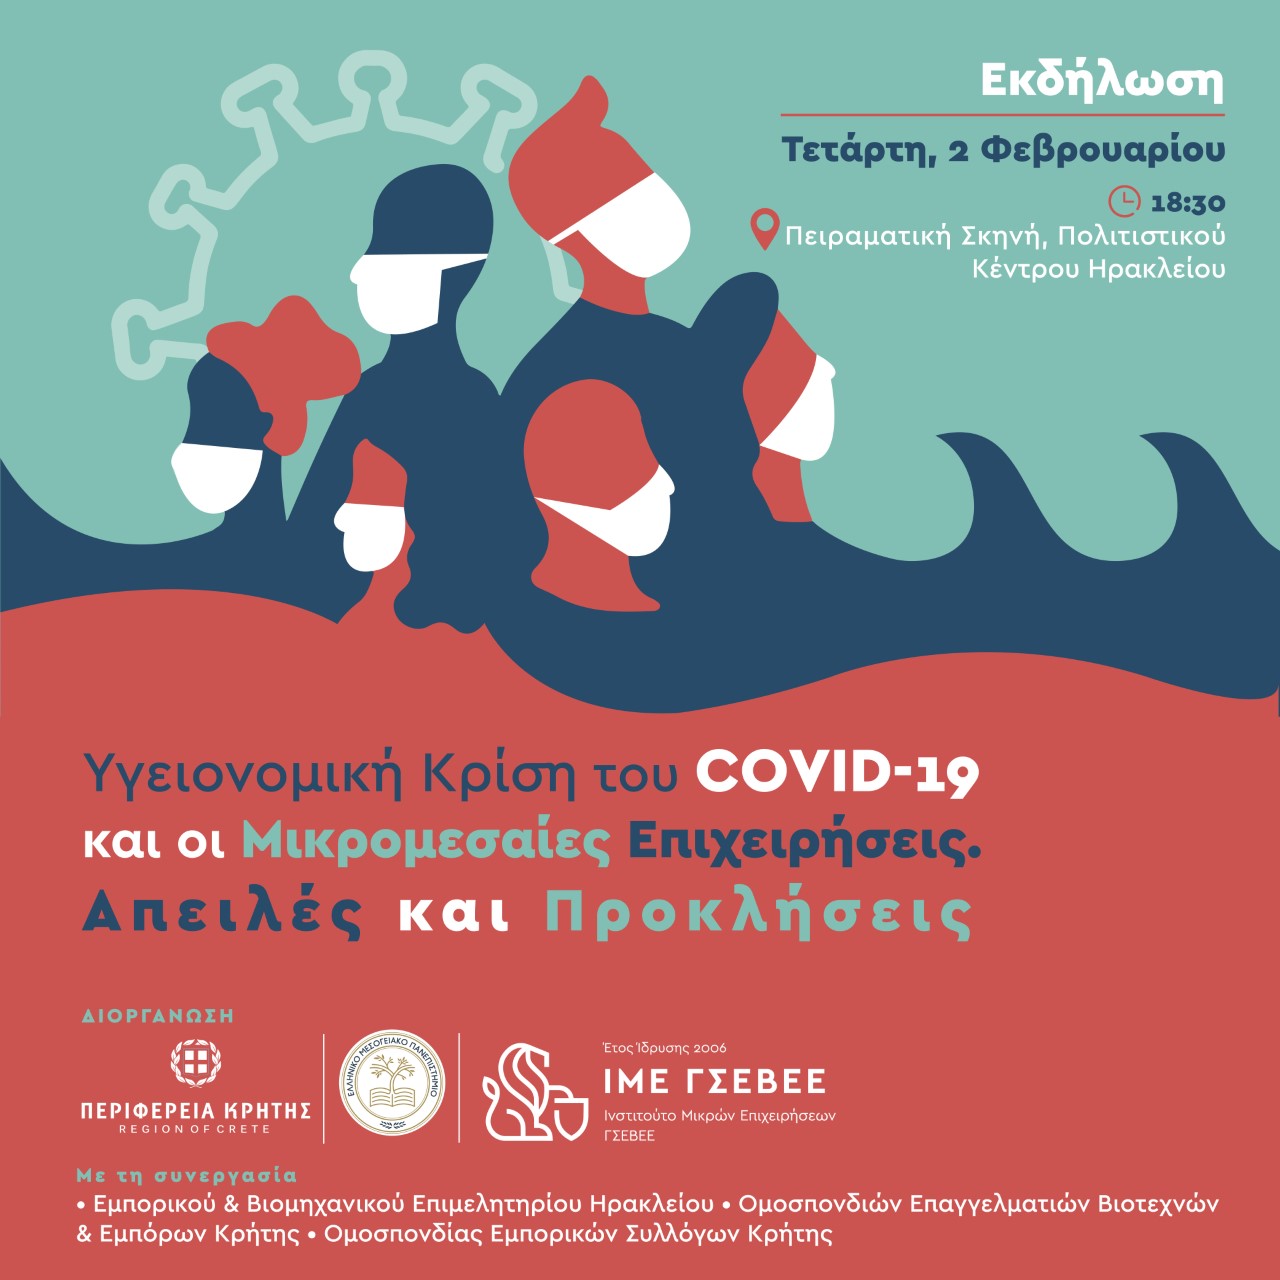 Οι οικονομικές επιπτώσεις από την πανδημία COVID-19 στη Κρήτη